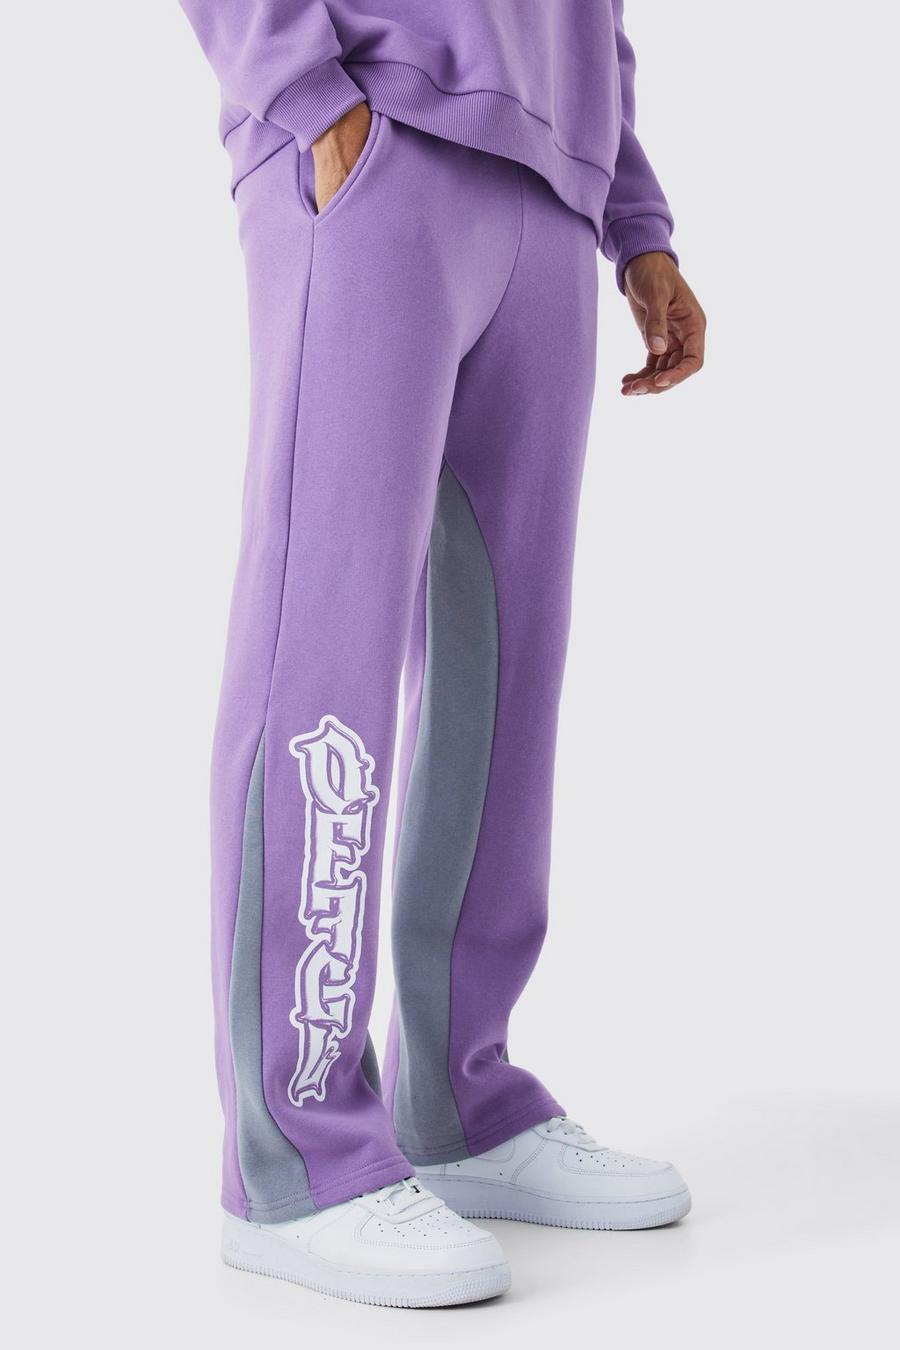 Pantaloni tuta Official stile Graffiti con inserti, Lilac